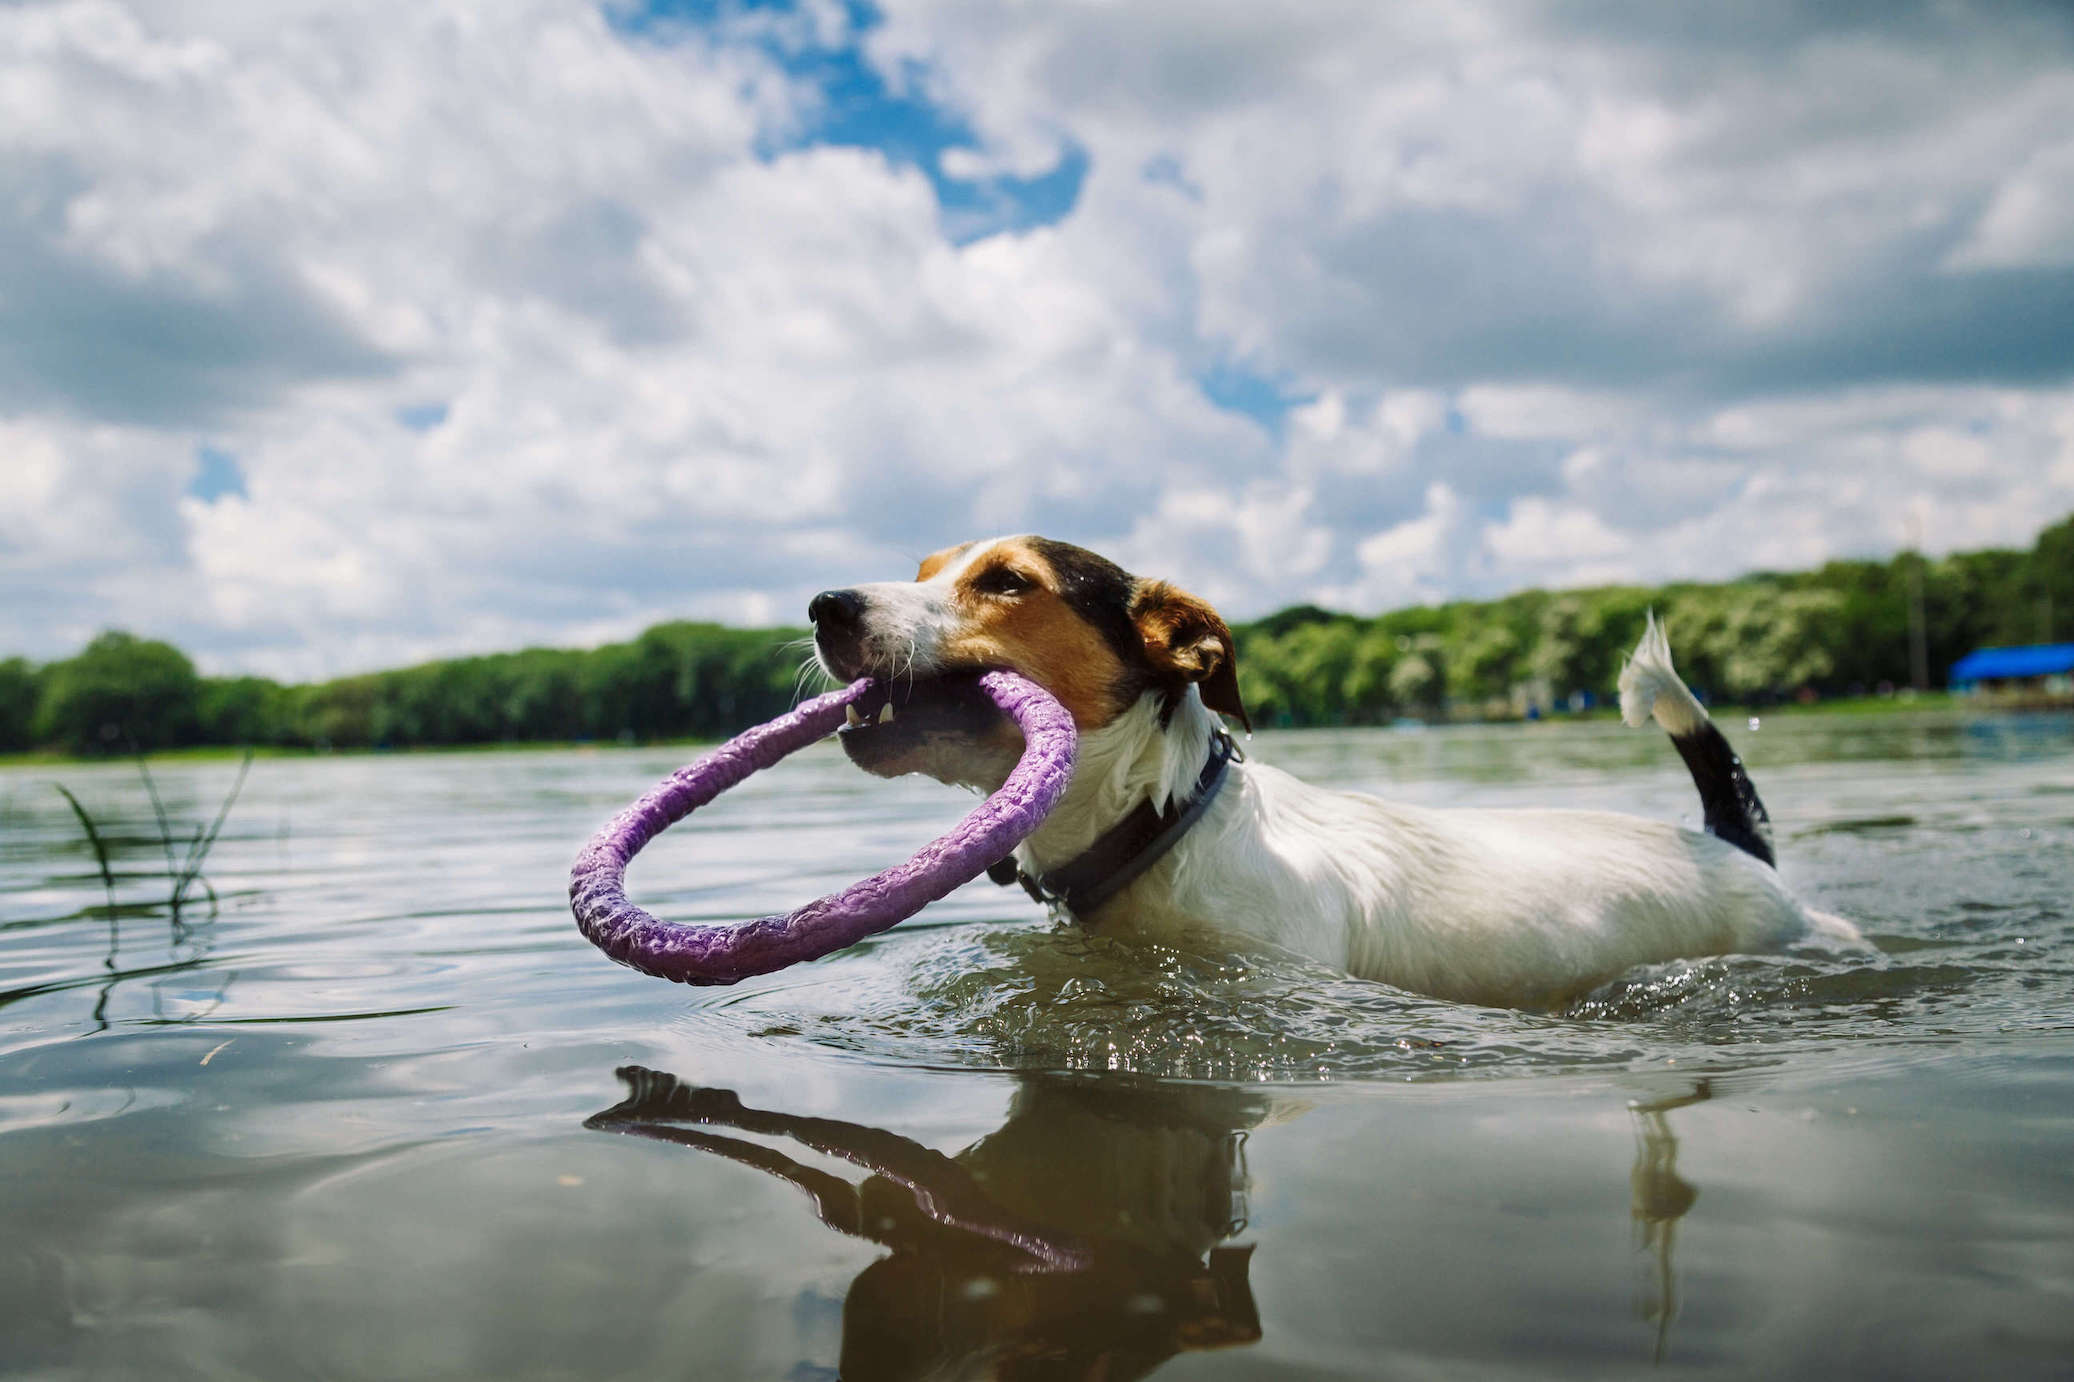 Mehrfarbiger Terrier schwimmt im Wasser mit einem Spielzeug im Maul